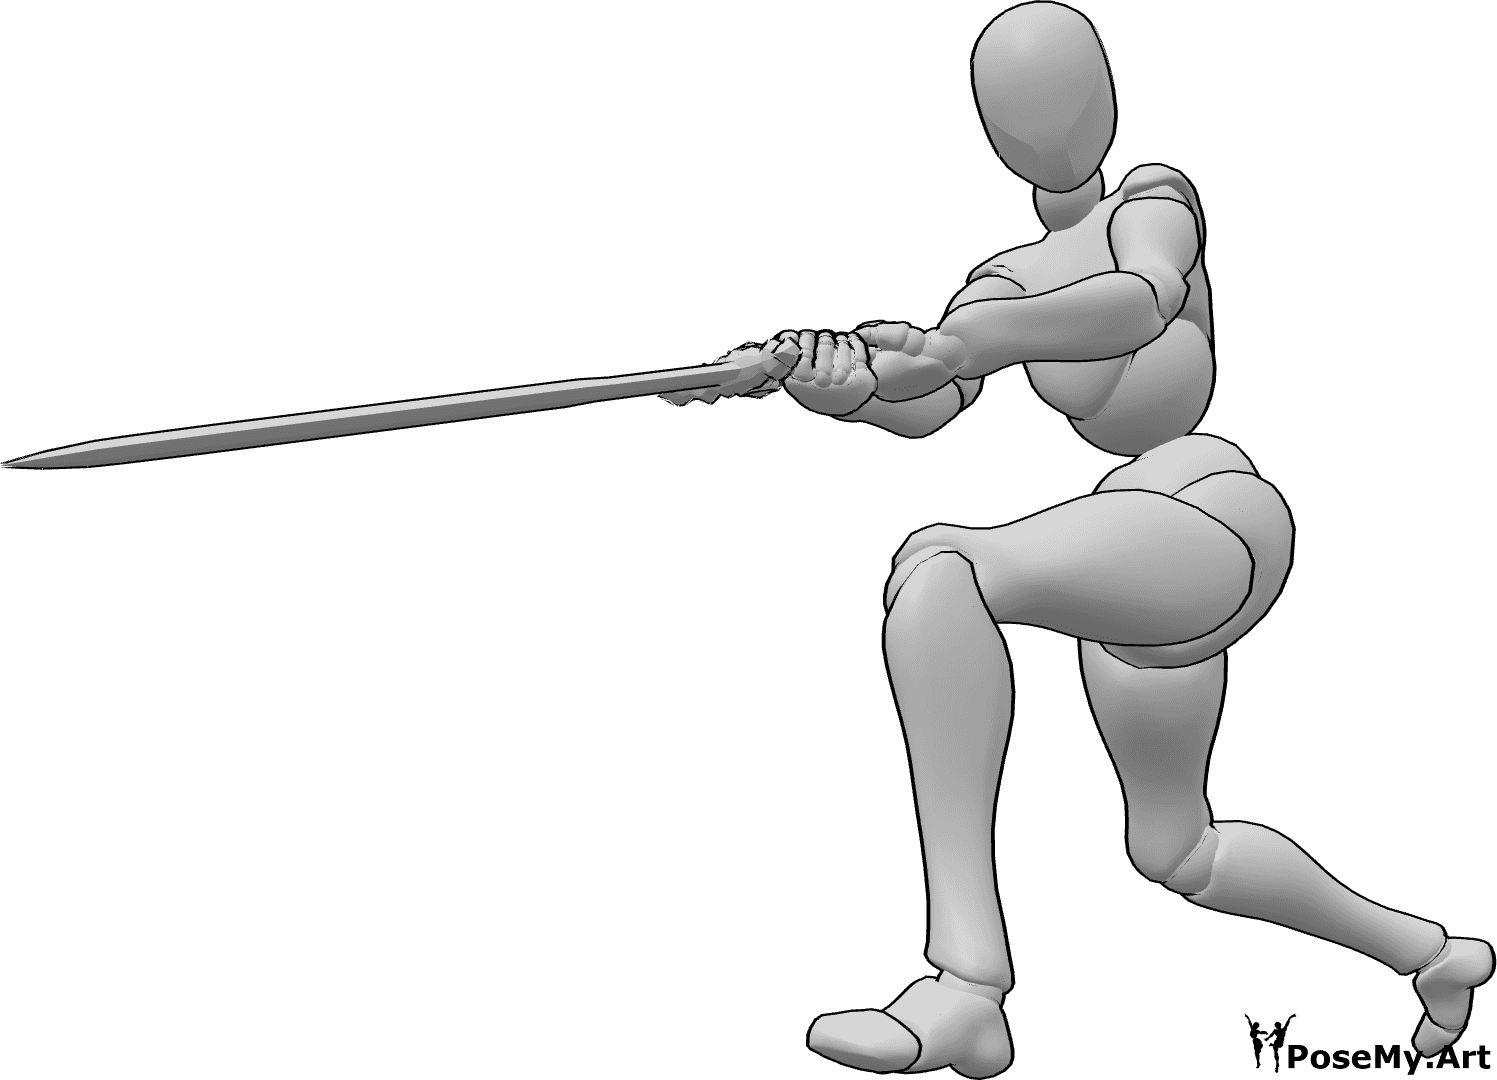 Riferimento alle pose- Posa della donna che brandisce la spada - Donna che impugna la spada con entrambe le mani, guardando a sinistra, posa della donna che brandisce la spada